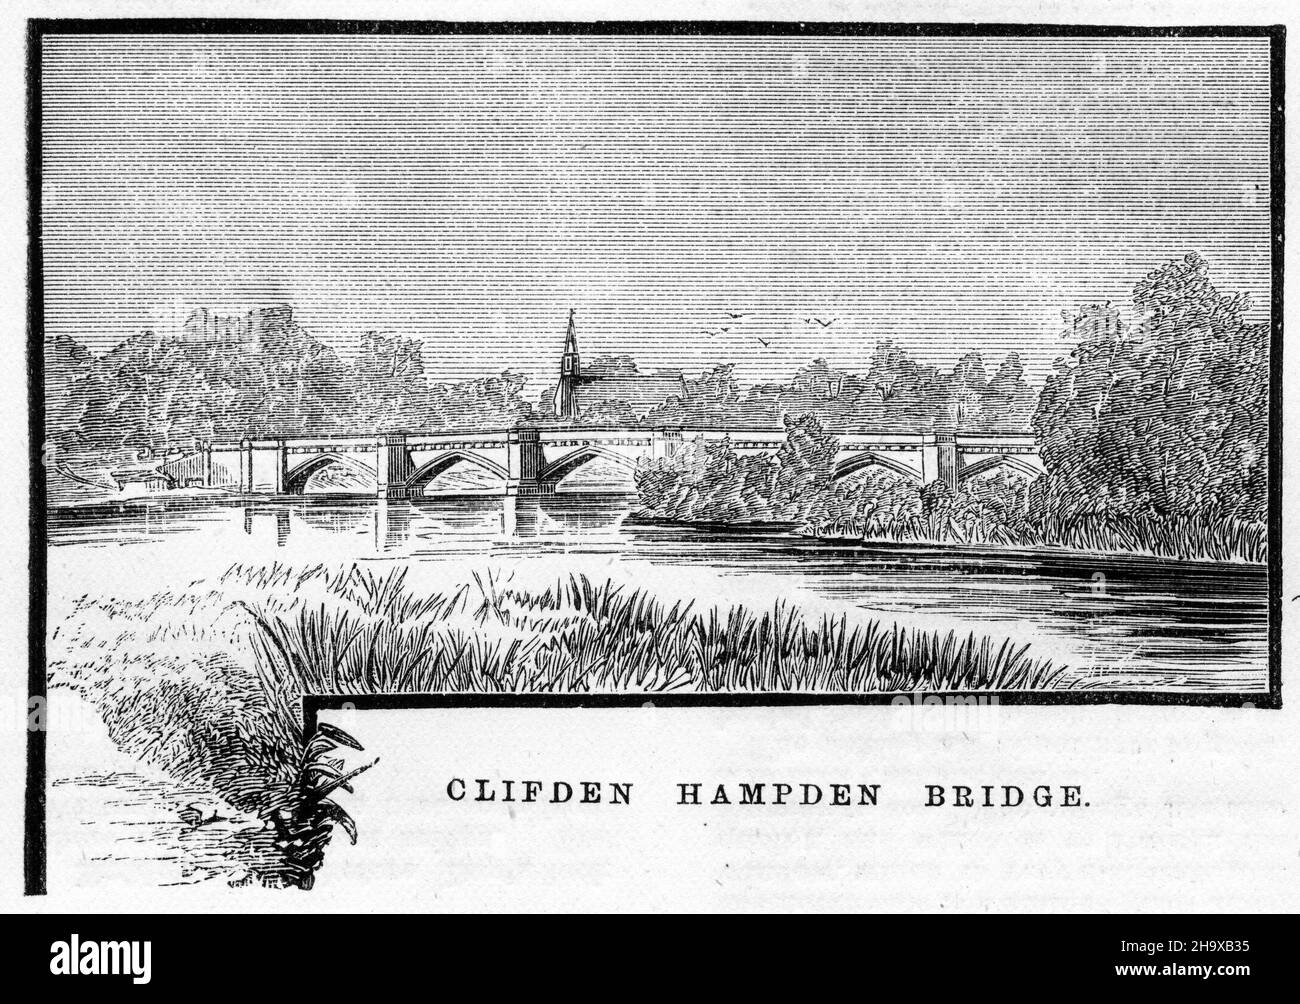 Gravure du pont Clifden hampden, Angleterre, d'un guide de pêche pour la Tamise, vers 1880 Banque D'Images